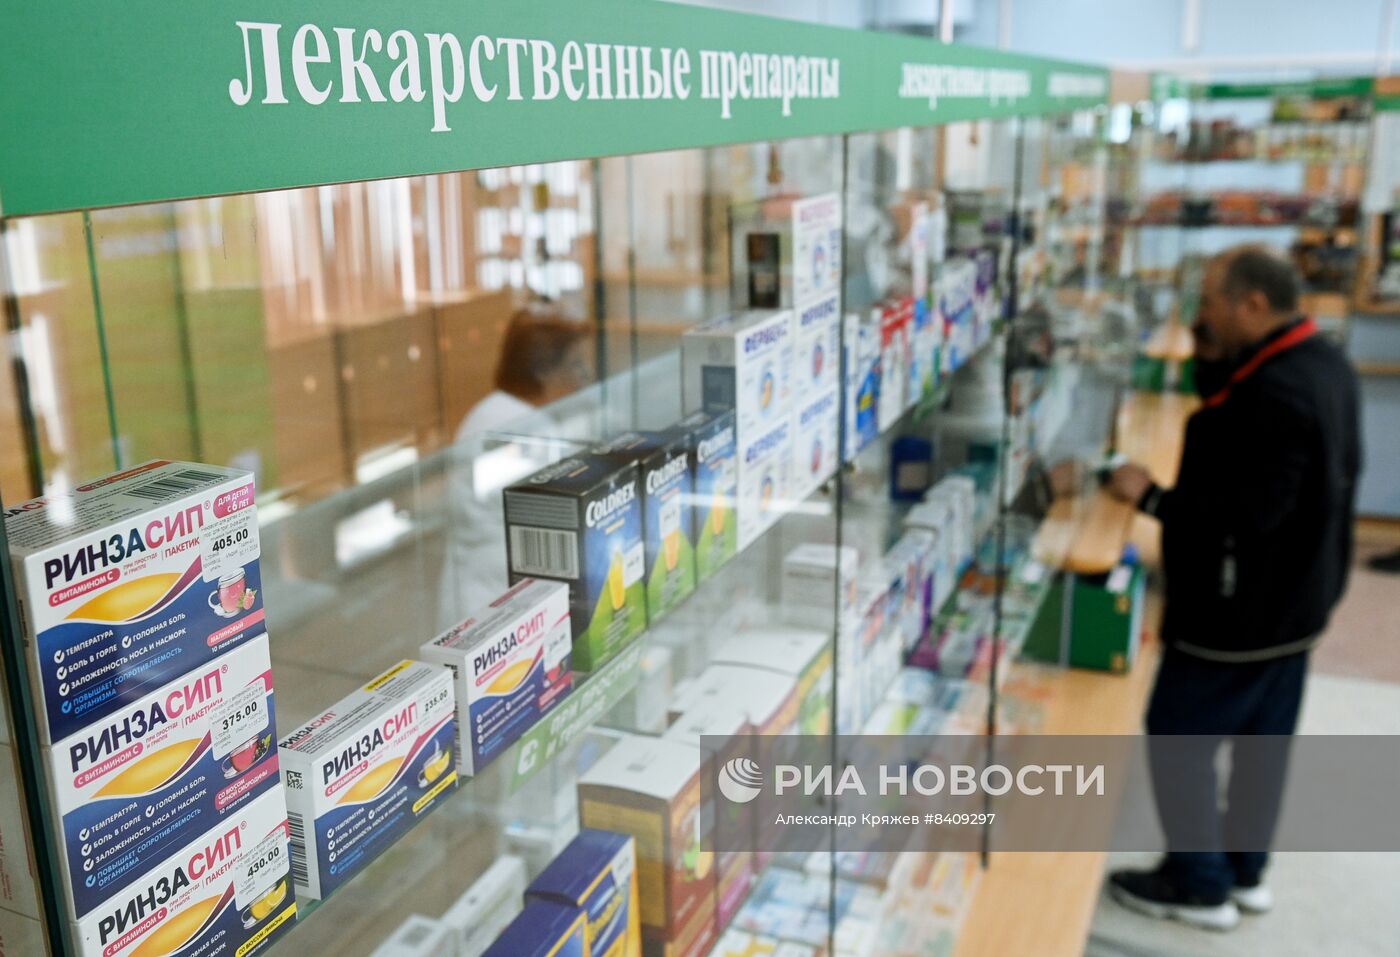 Производство лекарственных препаратов в Новосибирске